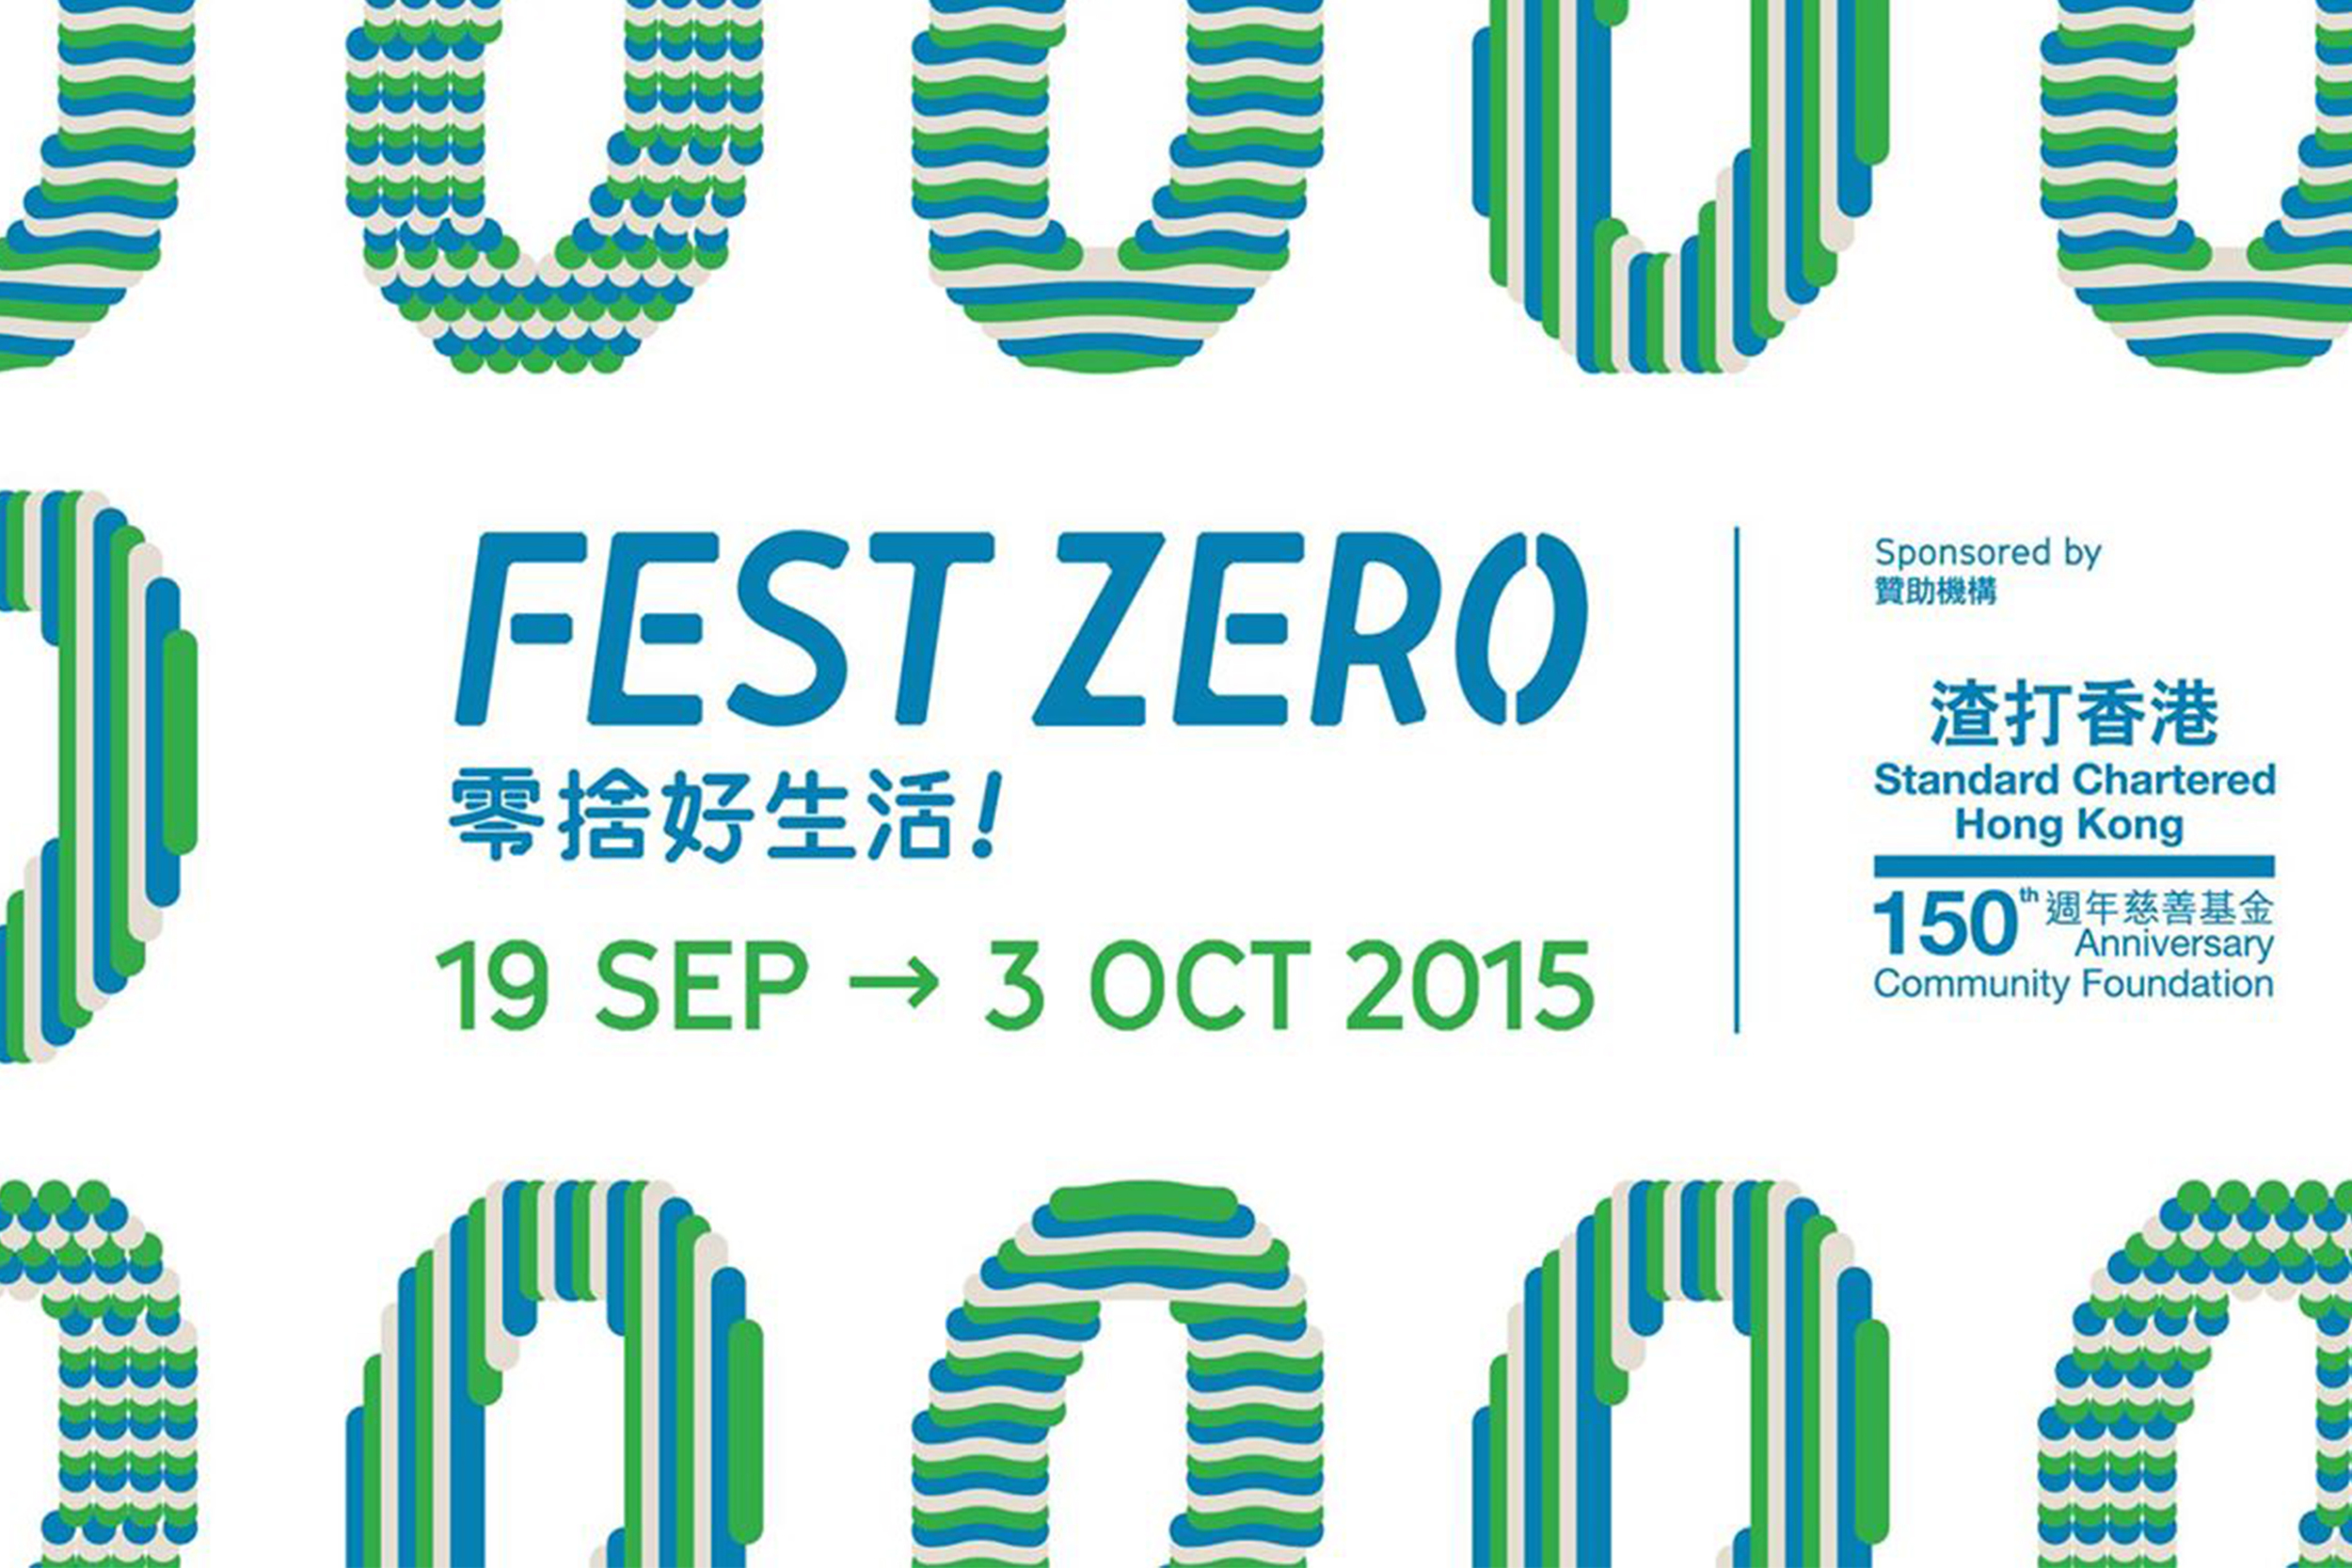 Fest Zero 2015